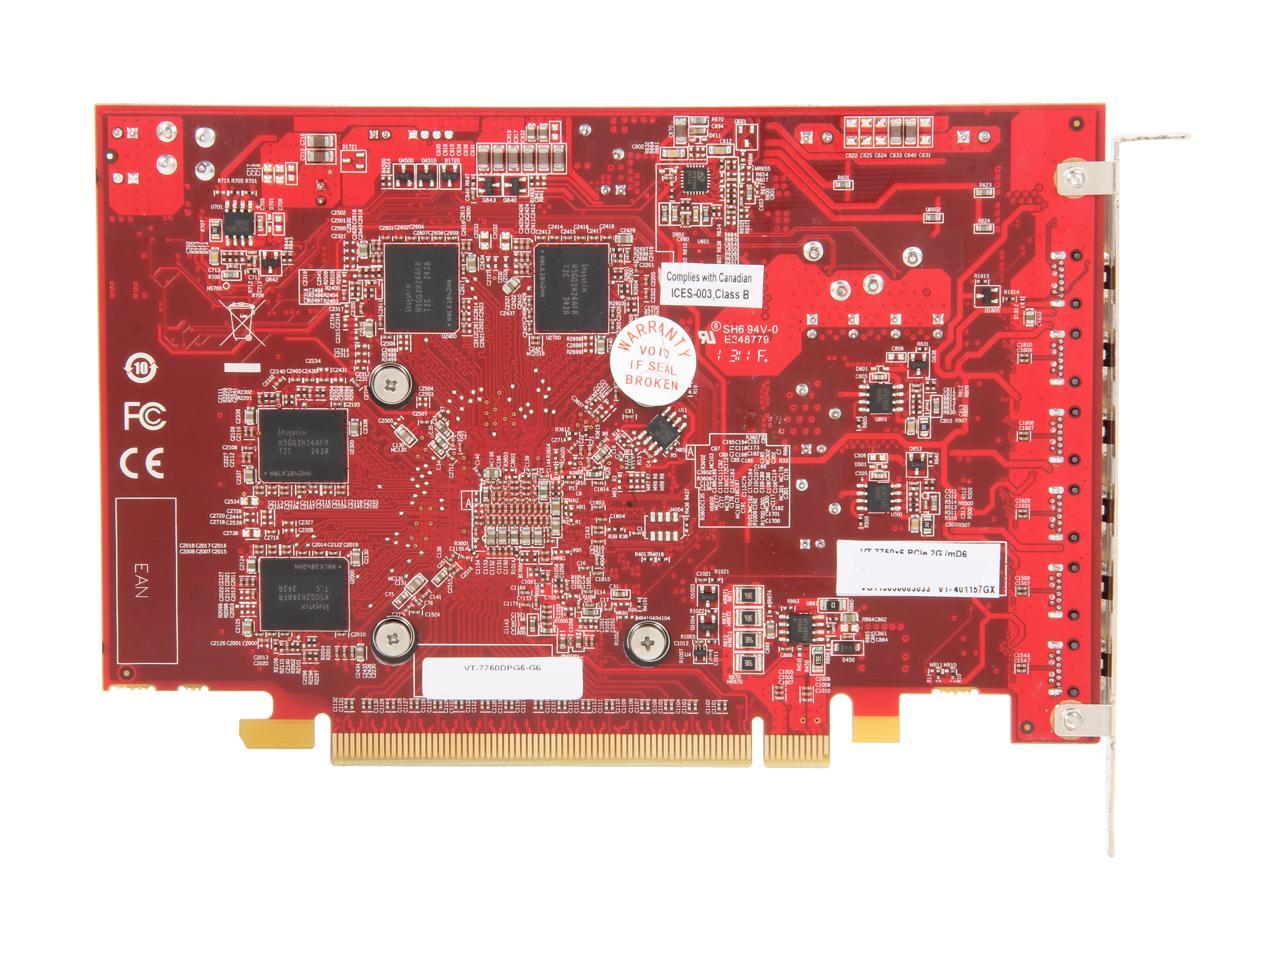 Visiontek Radeon HD 7750 2GB GDDR5 6M (6 x Mini DP), 900614